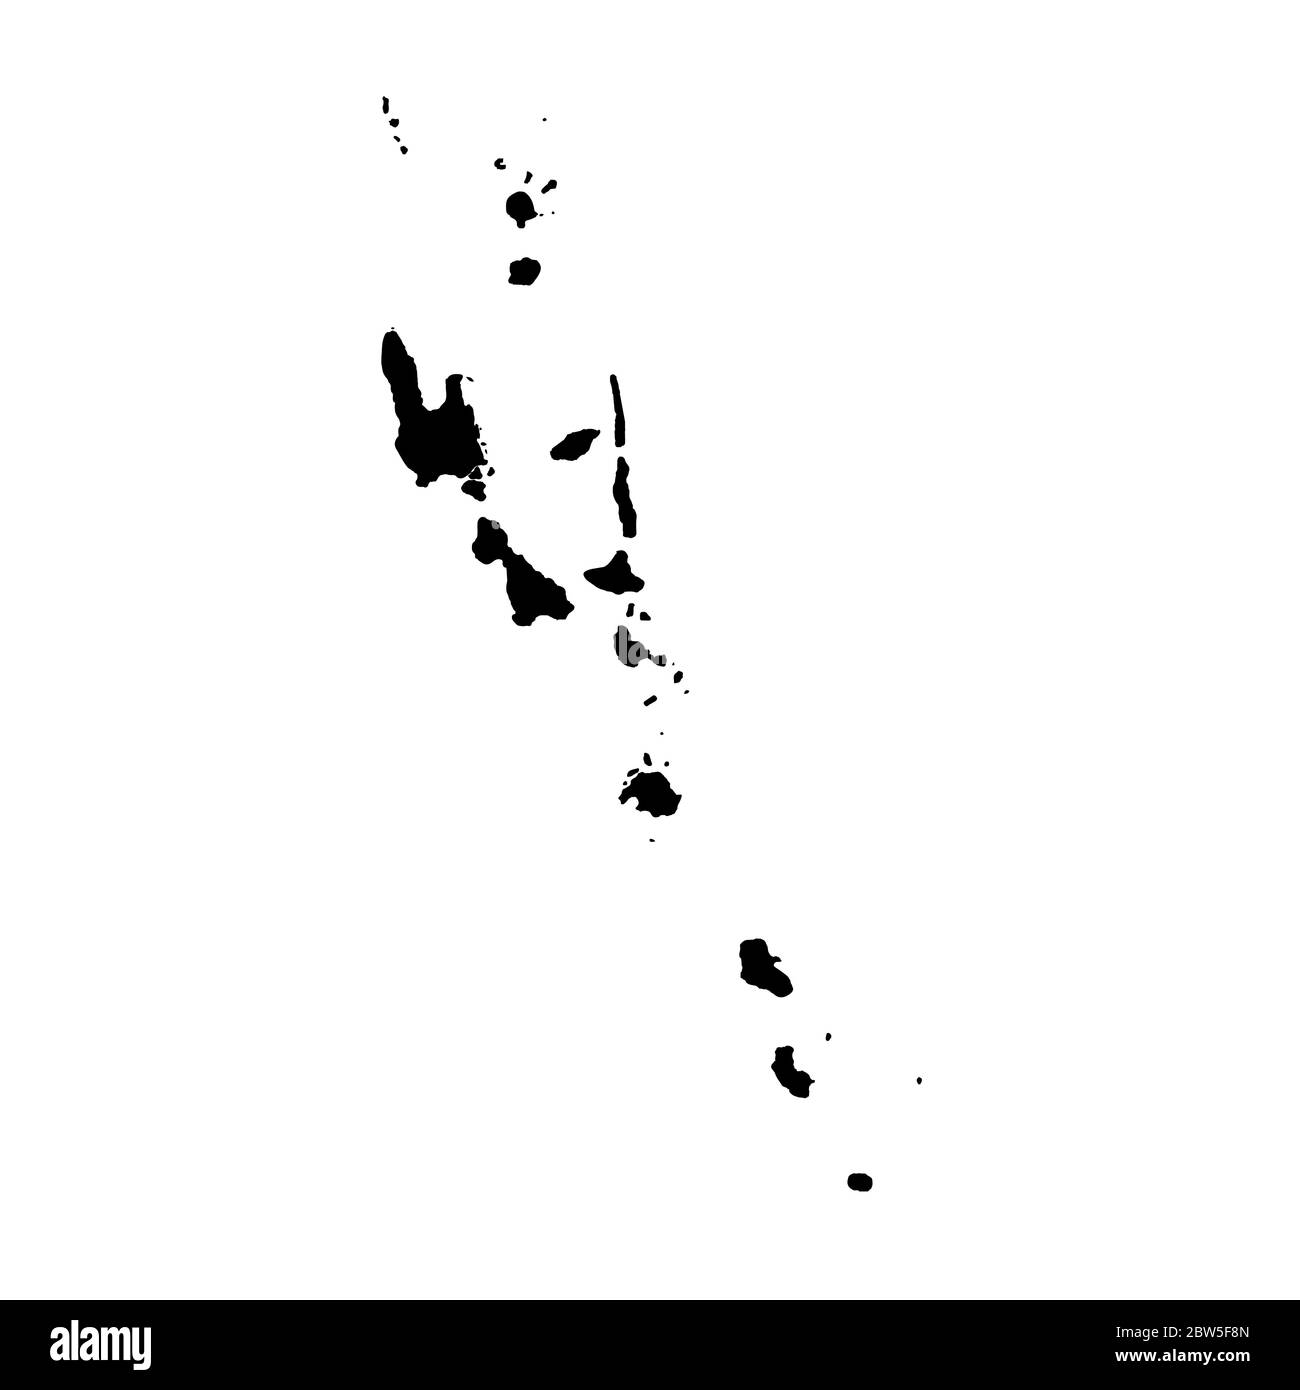 Vektorkarte Vanuatu. Isolierte Vektorgrafik. Schwarz auf weißem Hintergrund. EPS 10-Abbildung. Stock Vektor